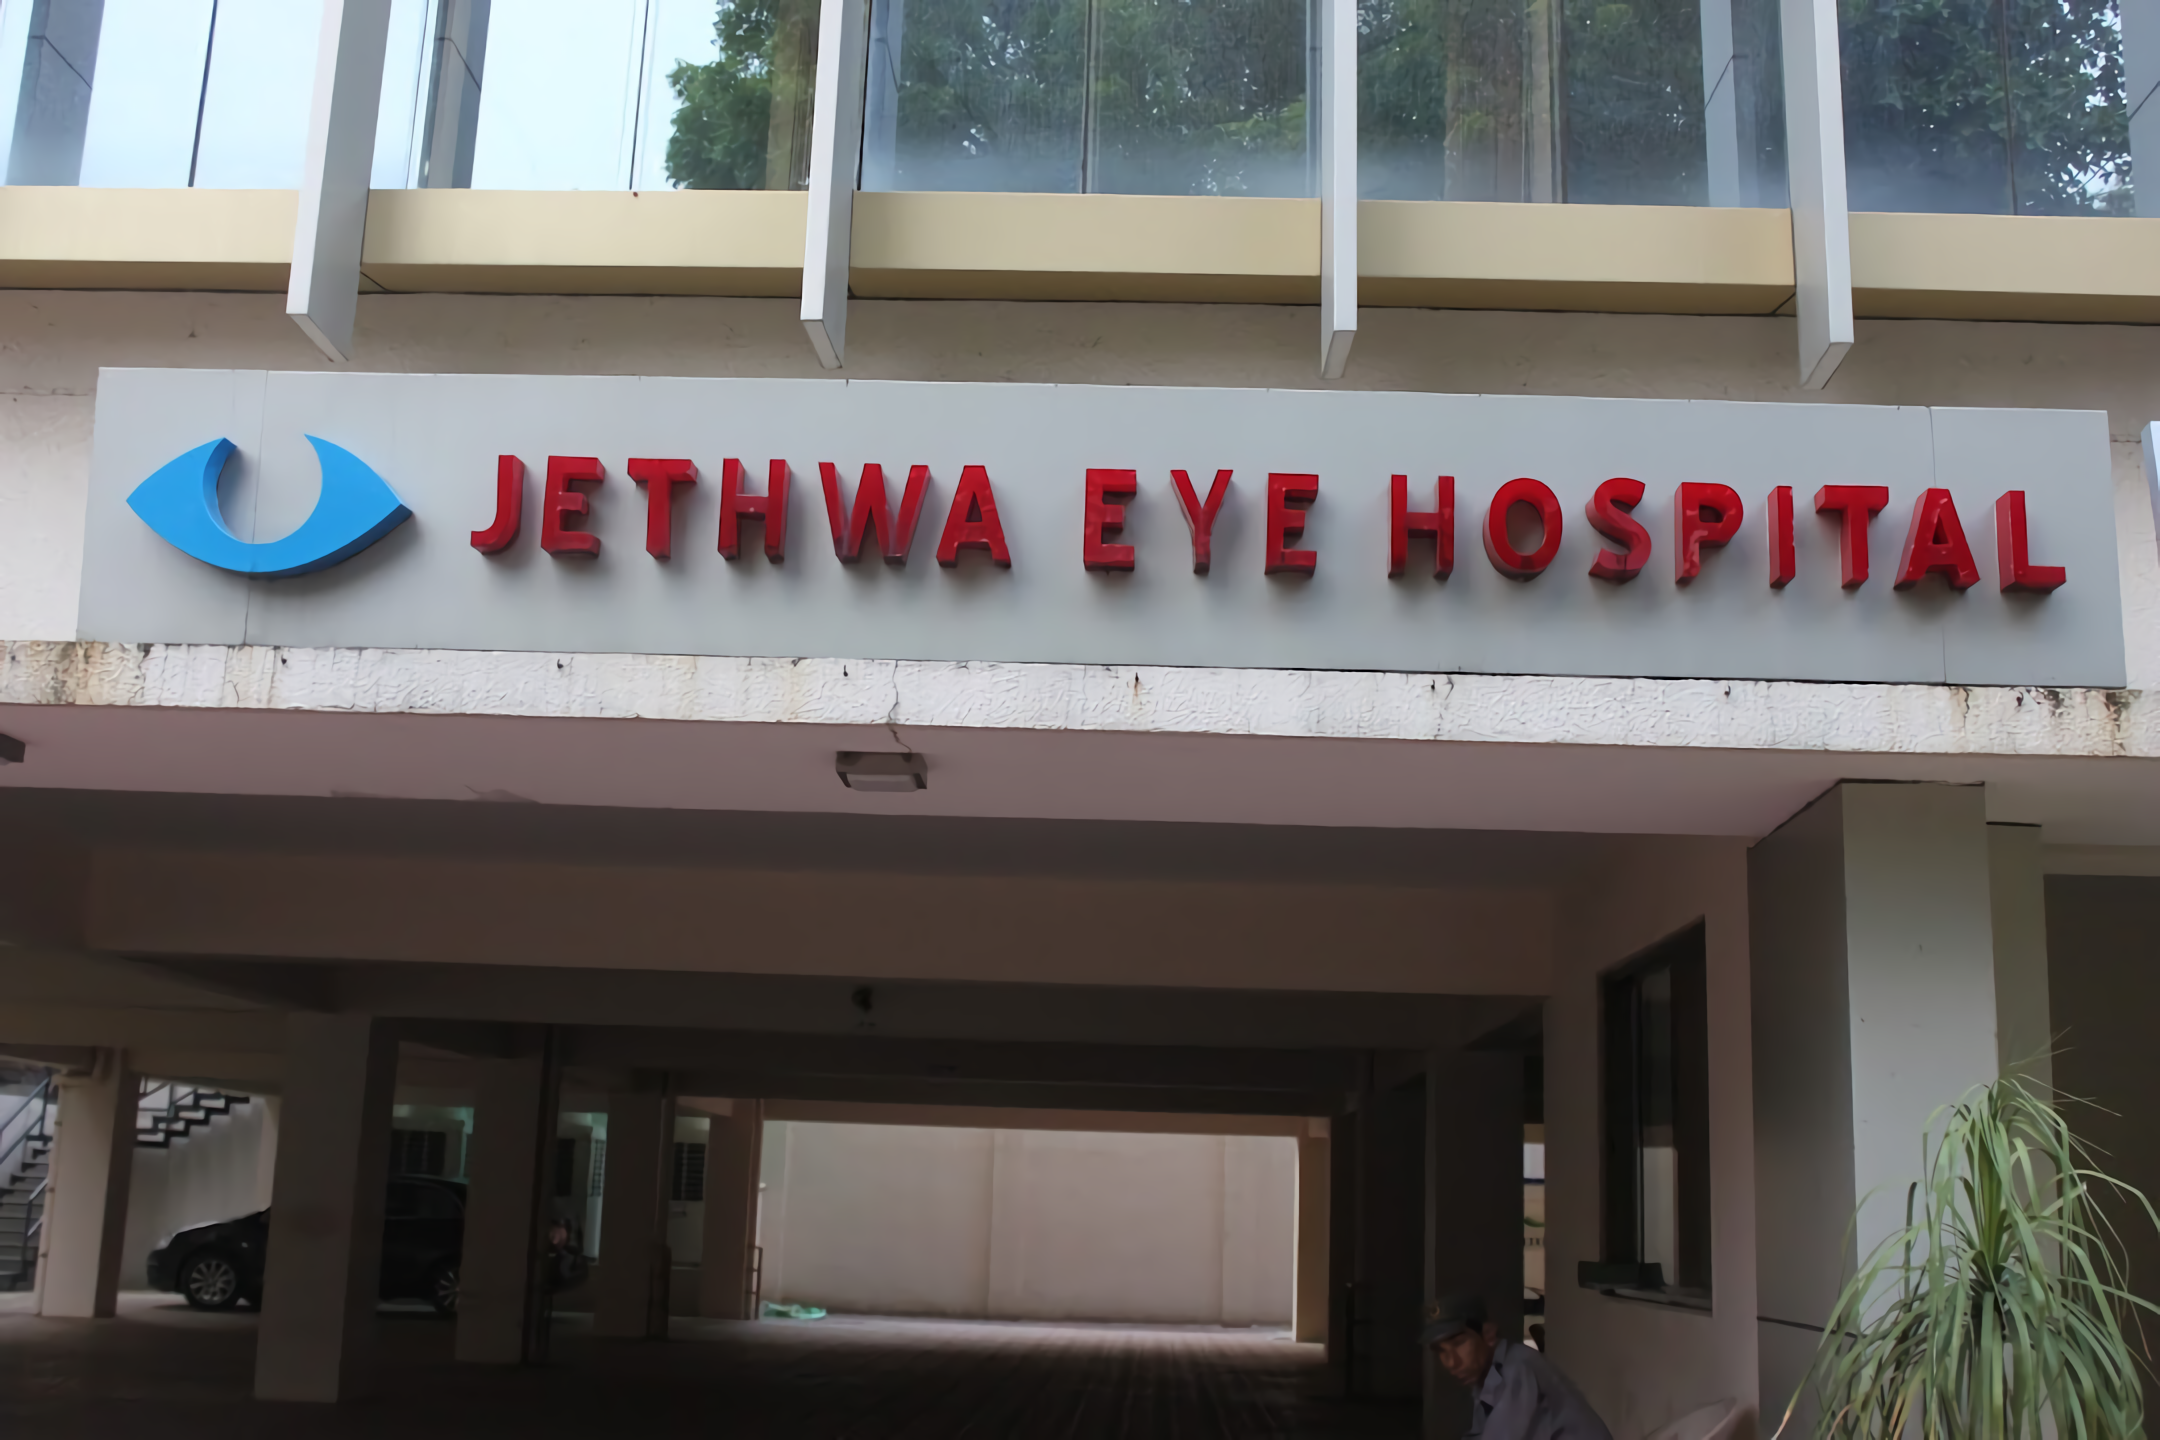 Jethwa Eye Hospital